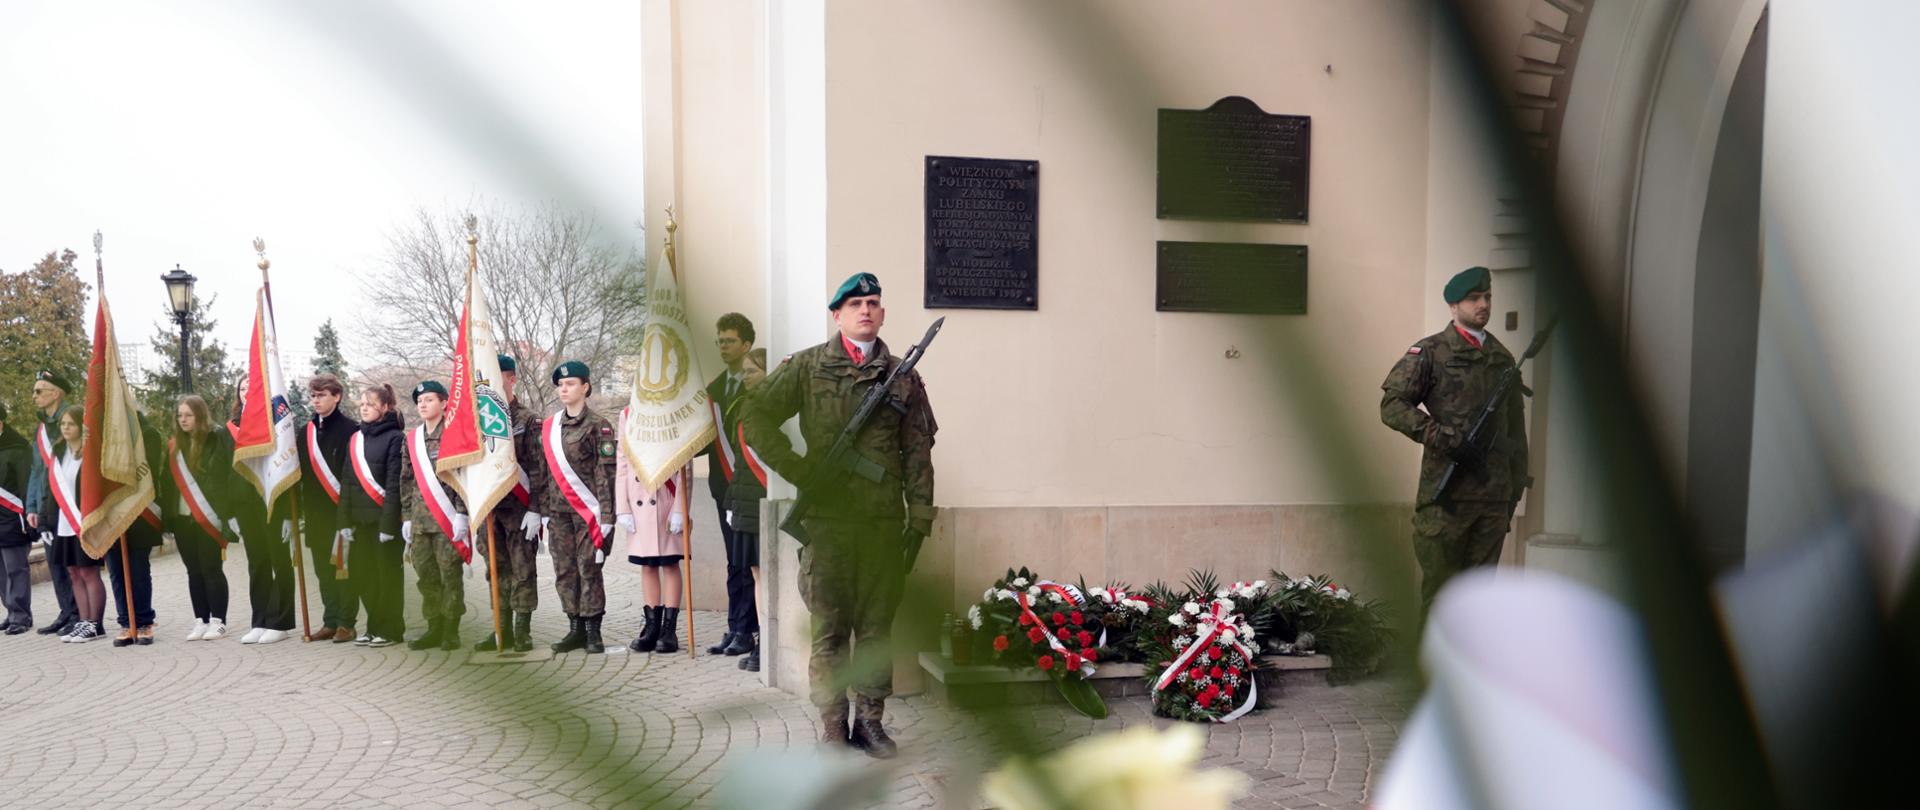 Dwóch żołnierzy stoi przy tablicy upamiętniającej. Pod tablicą kwiaty.